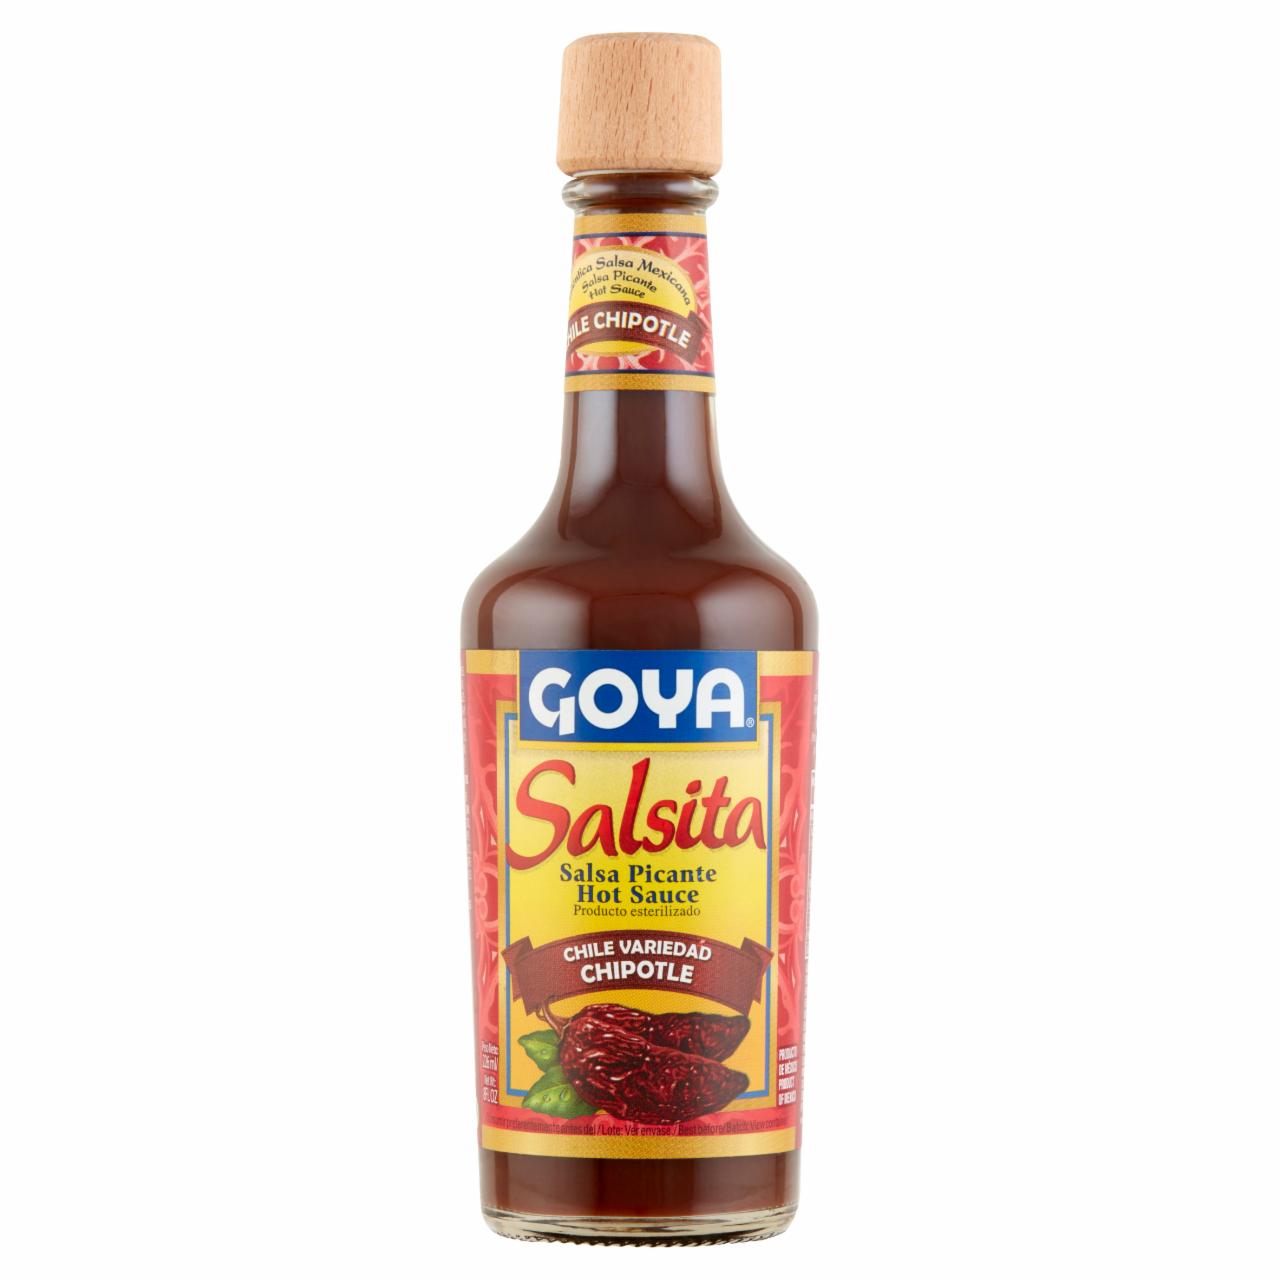 Képek - Goya fűszeres csípős szósz Chipotle chili paprikából 226 ml